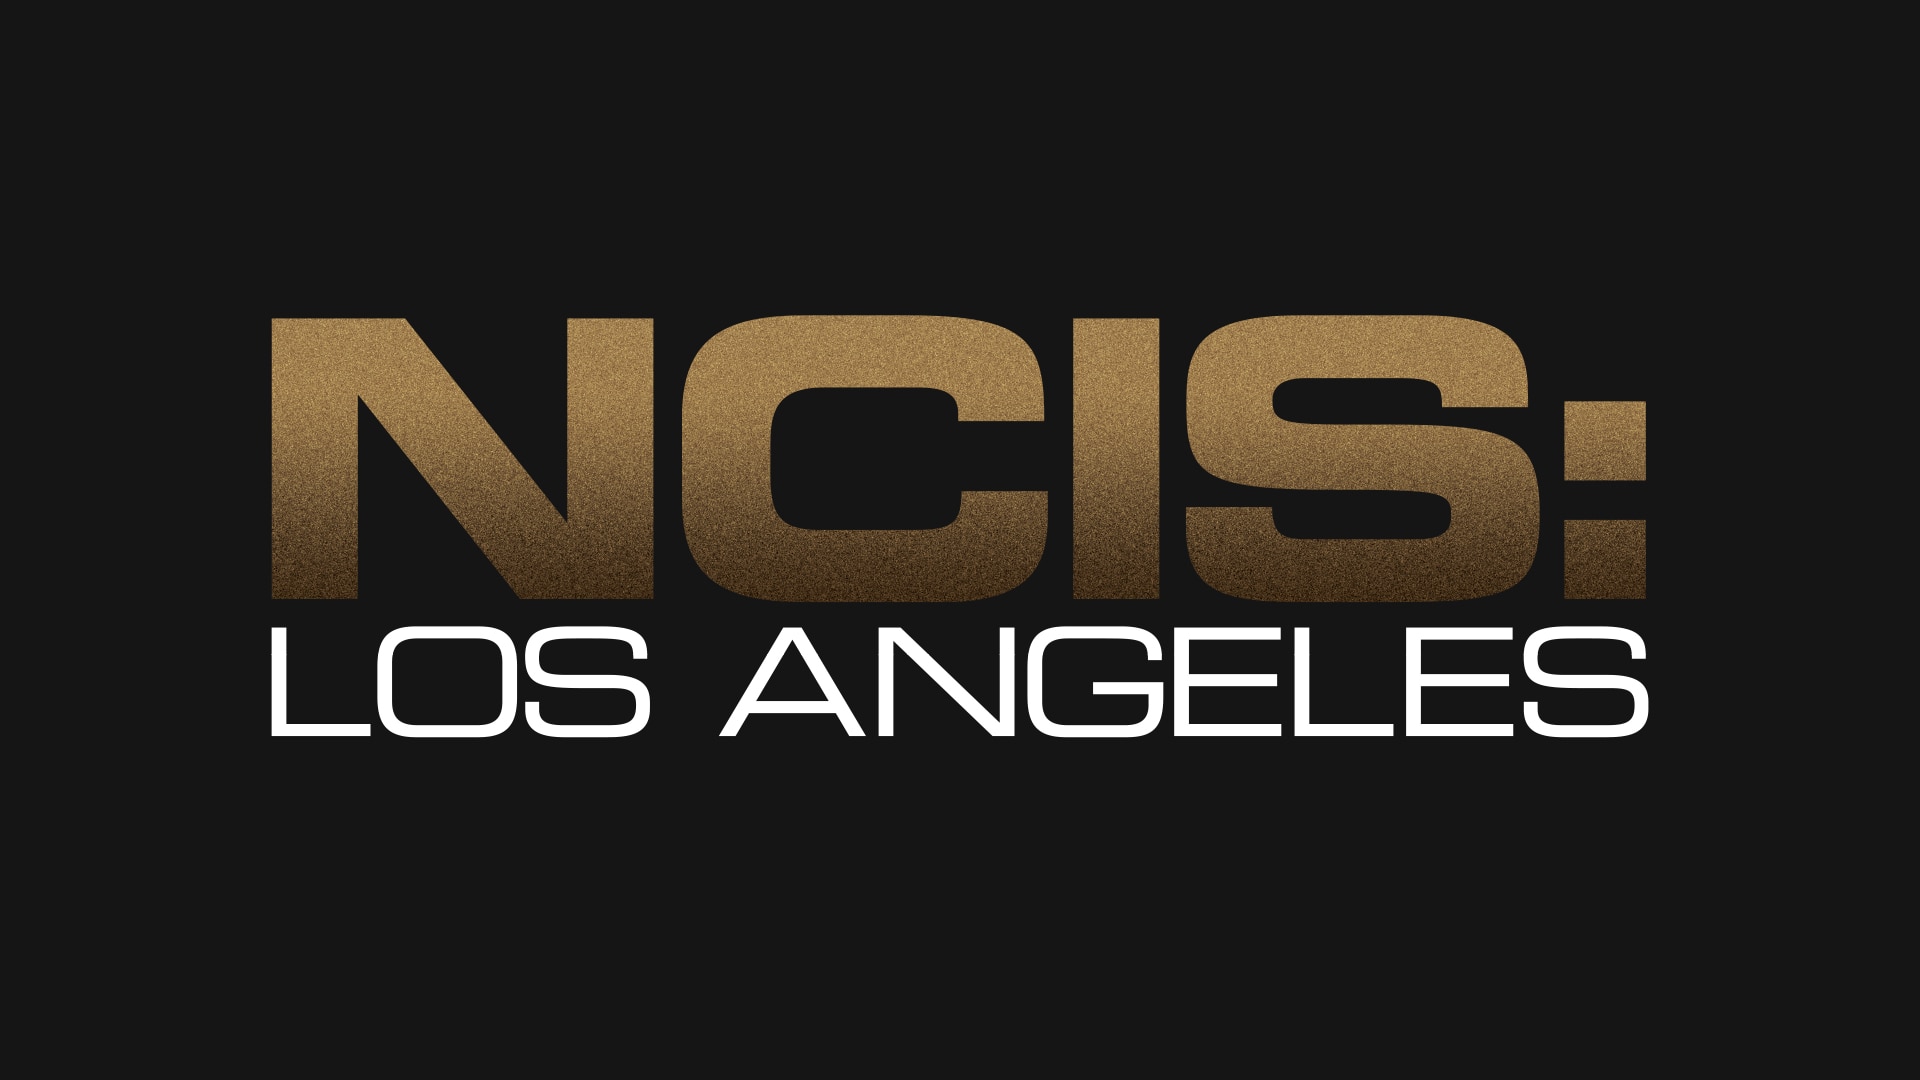 Лост анджелес текст френдли. Marciano los Angeles логотип. Наклейка (стикер) NCIS.